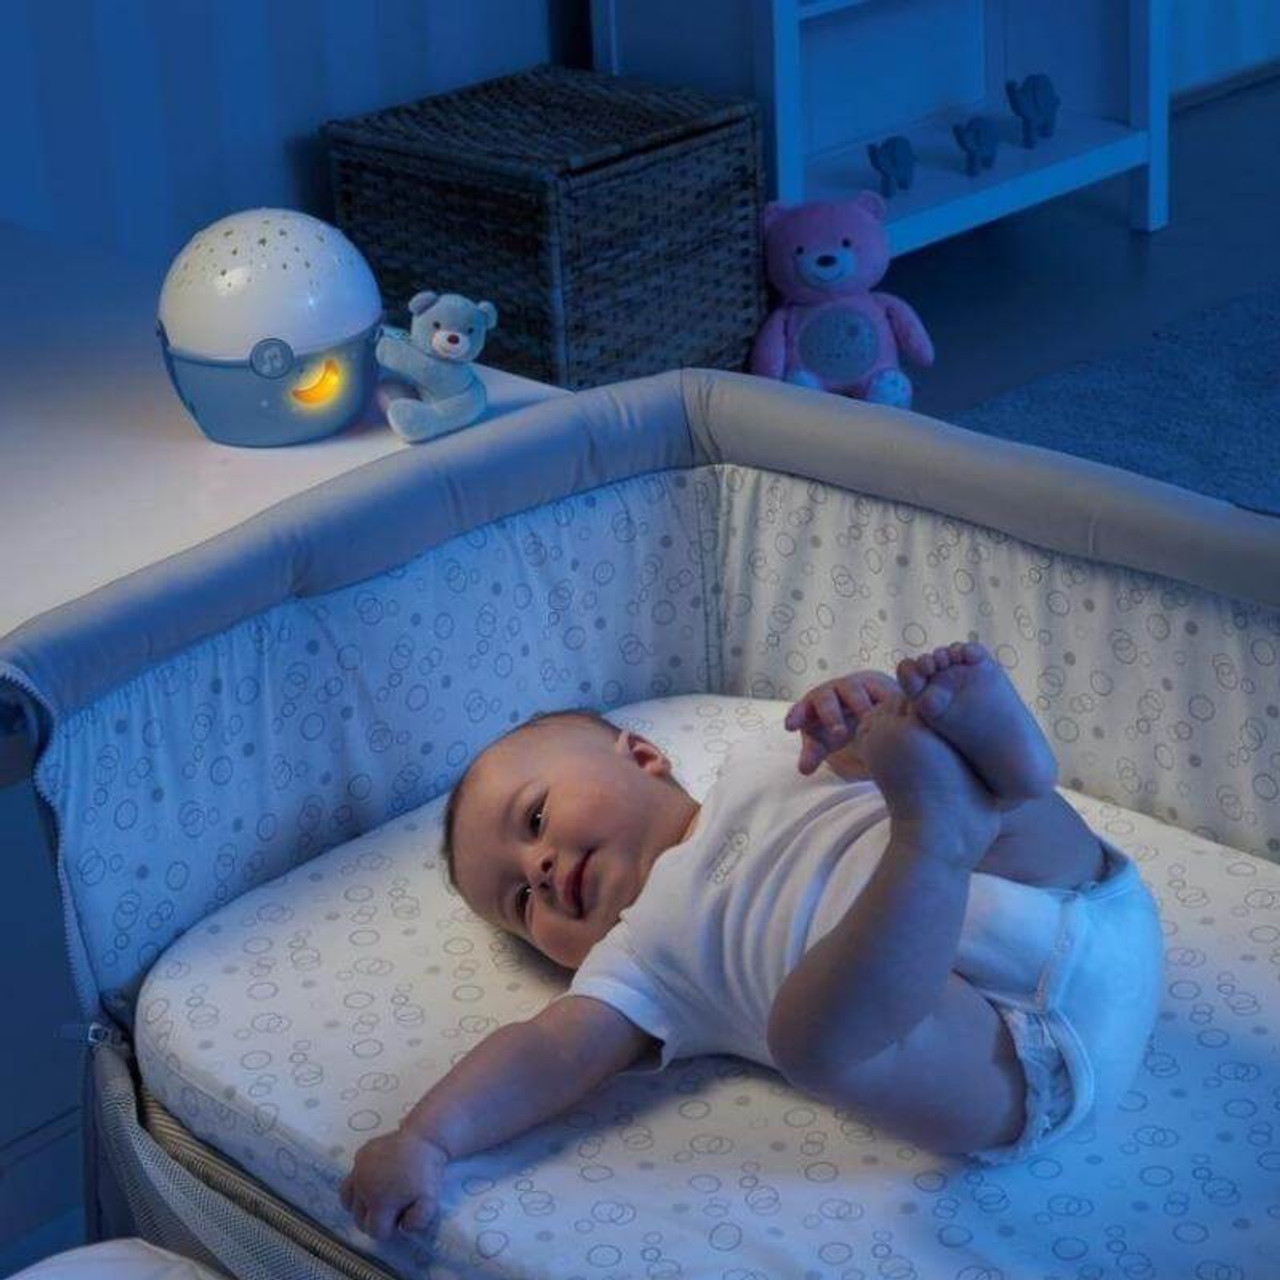 Proyector de luz nocturna para bebé Chicco next2stars: Inhealth